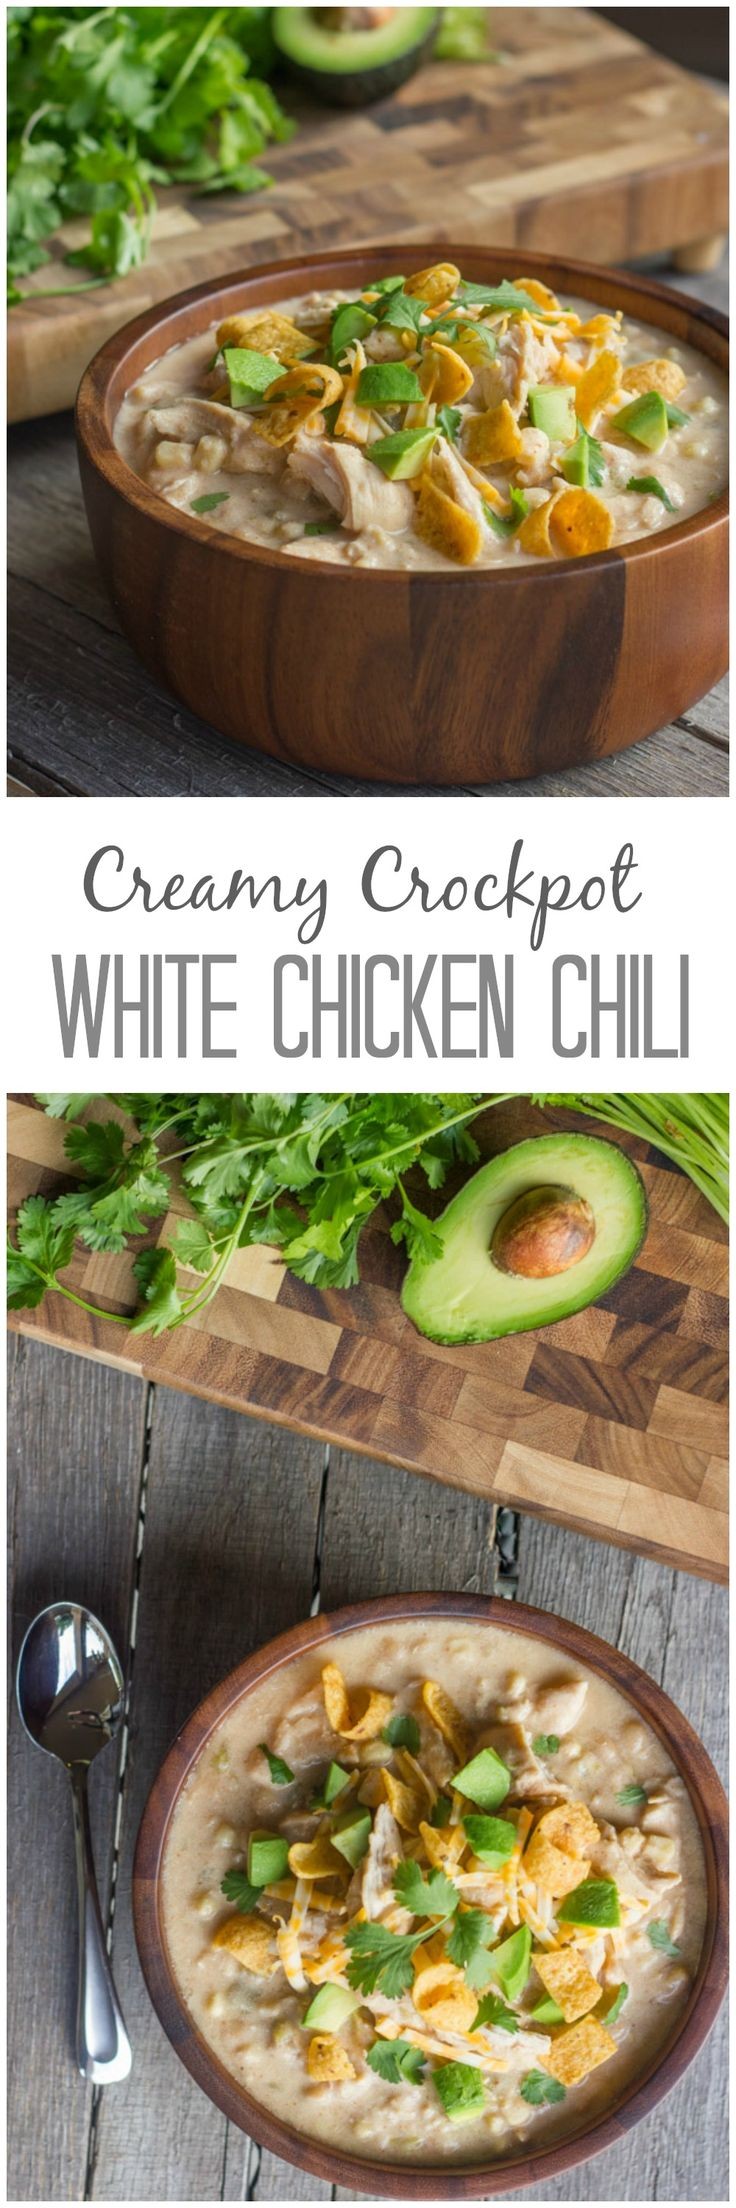 Creamy Crockpot White Chicken Chili - No Canned So...